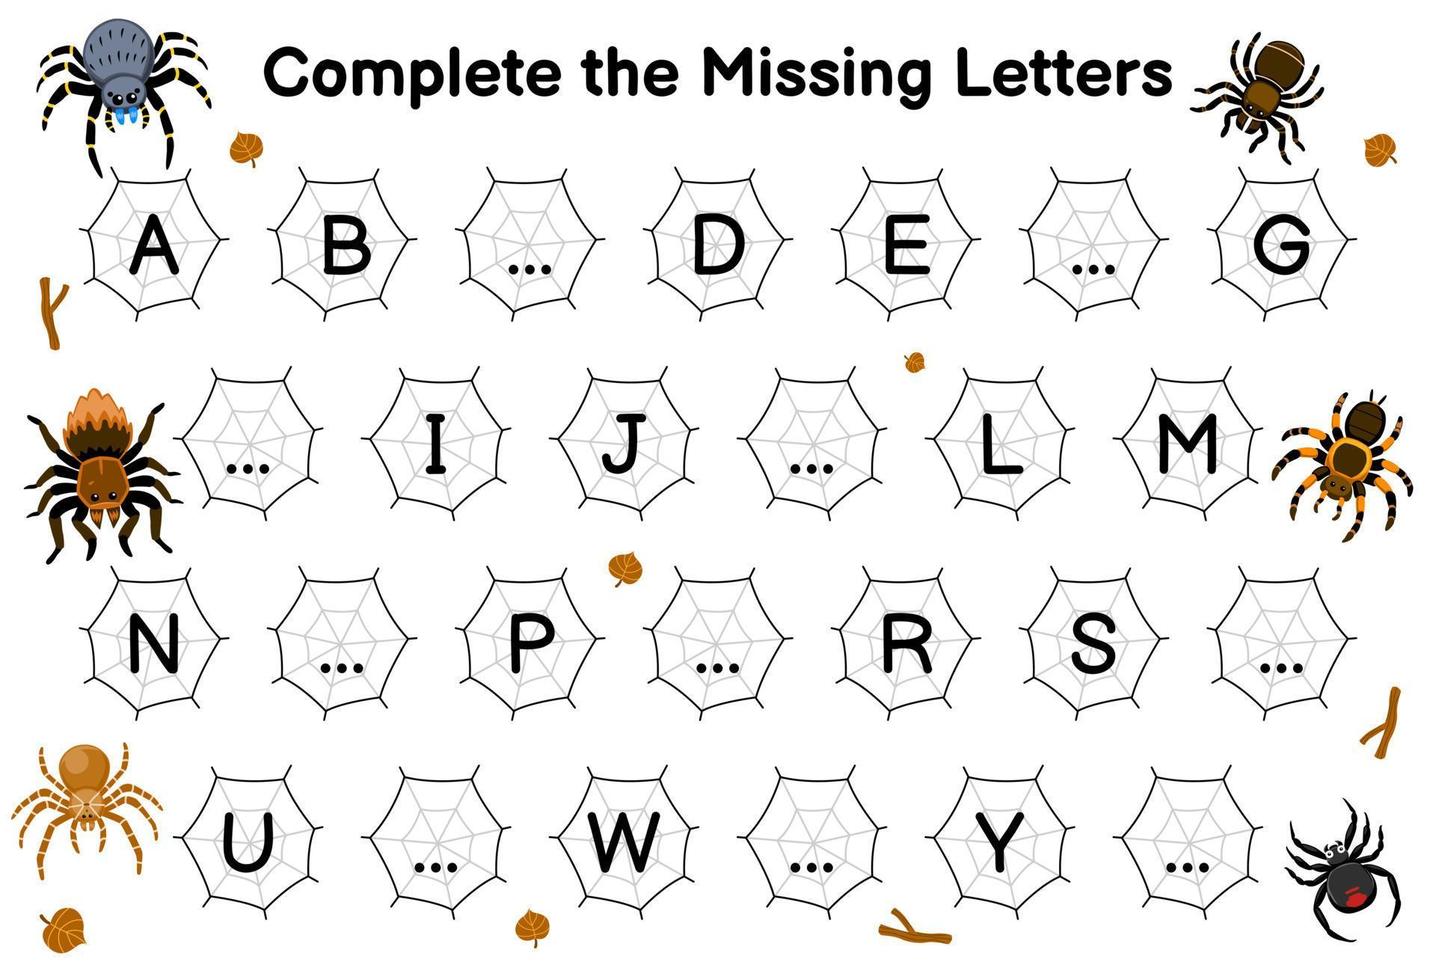 jogo de educação para completar as letras que faltam com planilha de bug para impressão de imagem de aranha fofa de desenho animado vetor